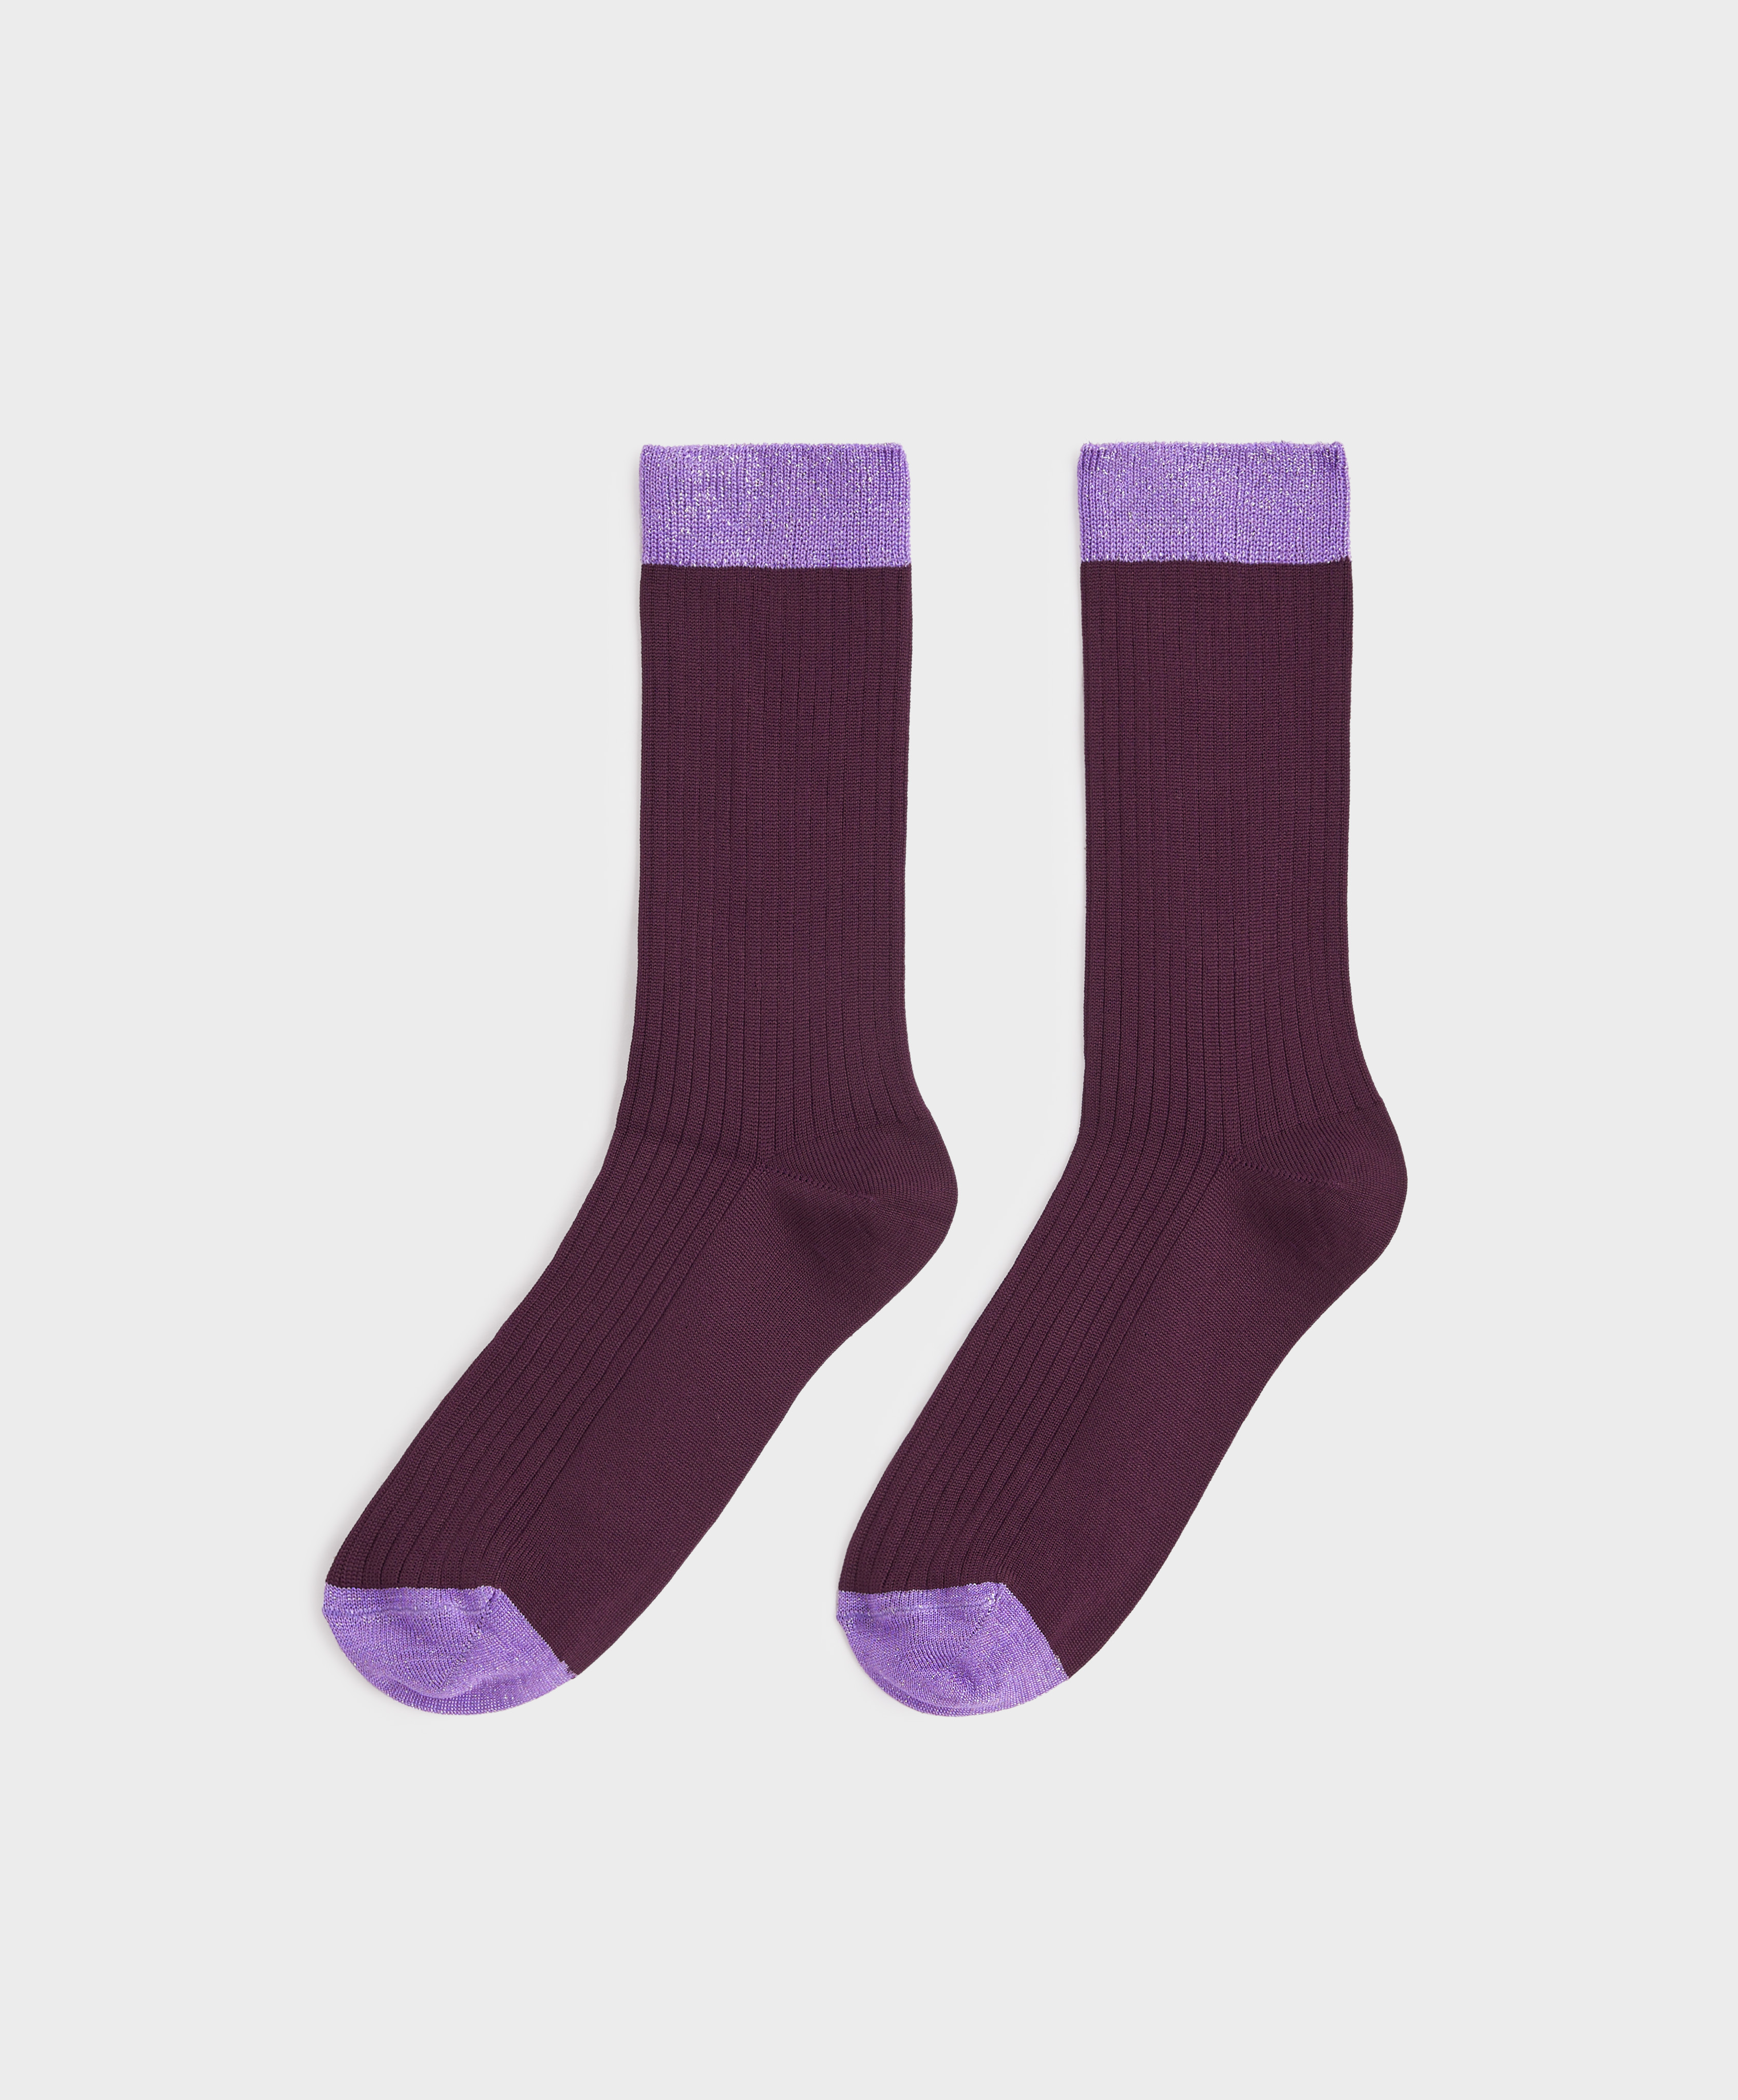 Κάλτσες classic από βισκόζη